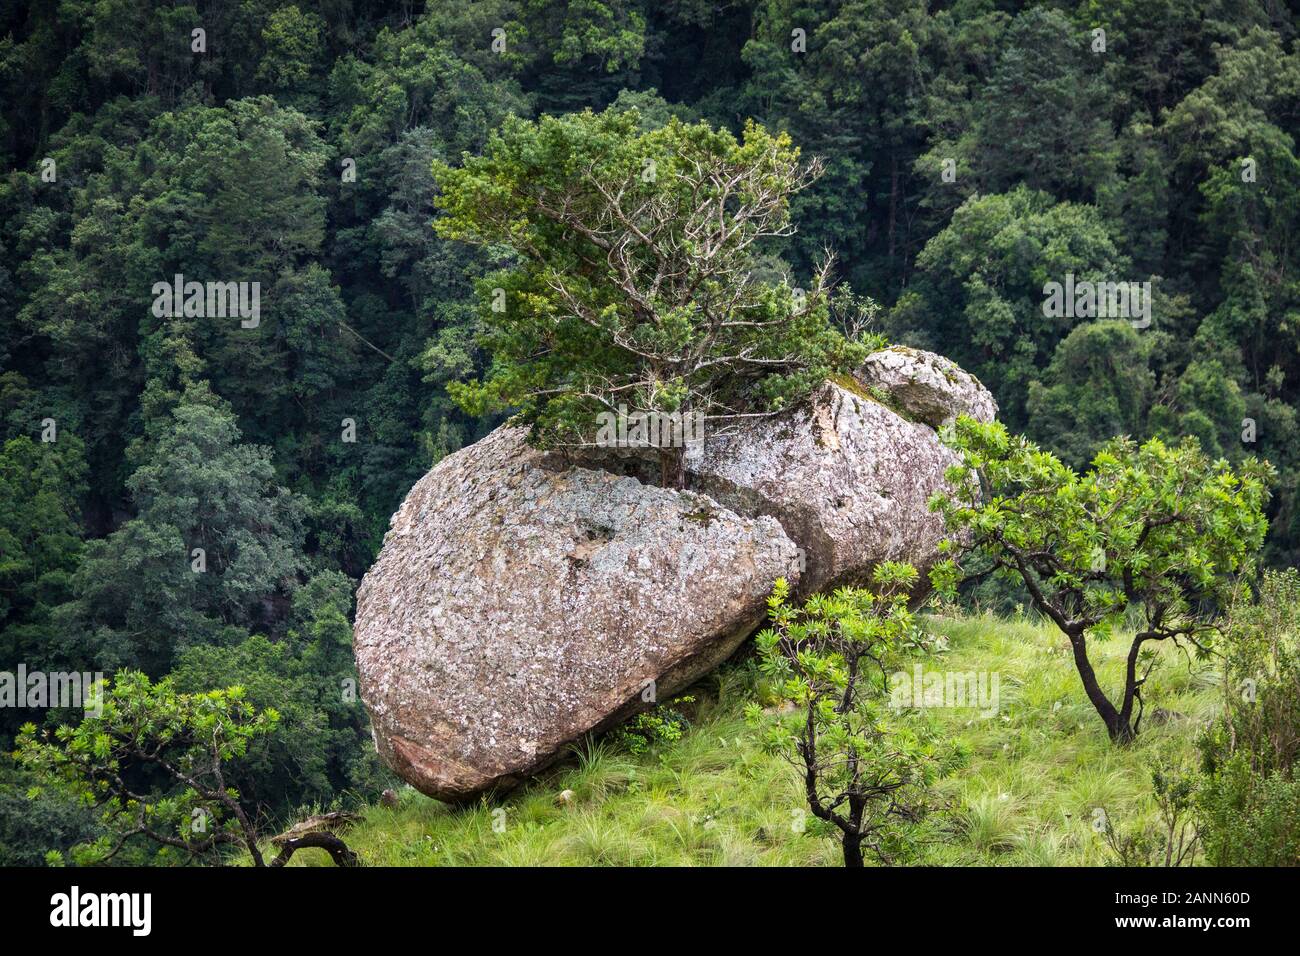 Un arbre se développe hors d'une crevasse d'un rocher Banque D'Images